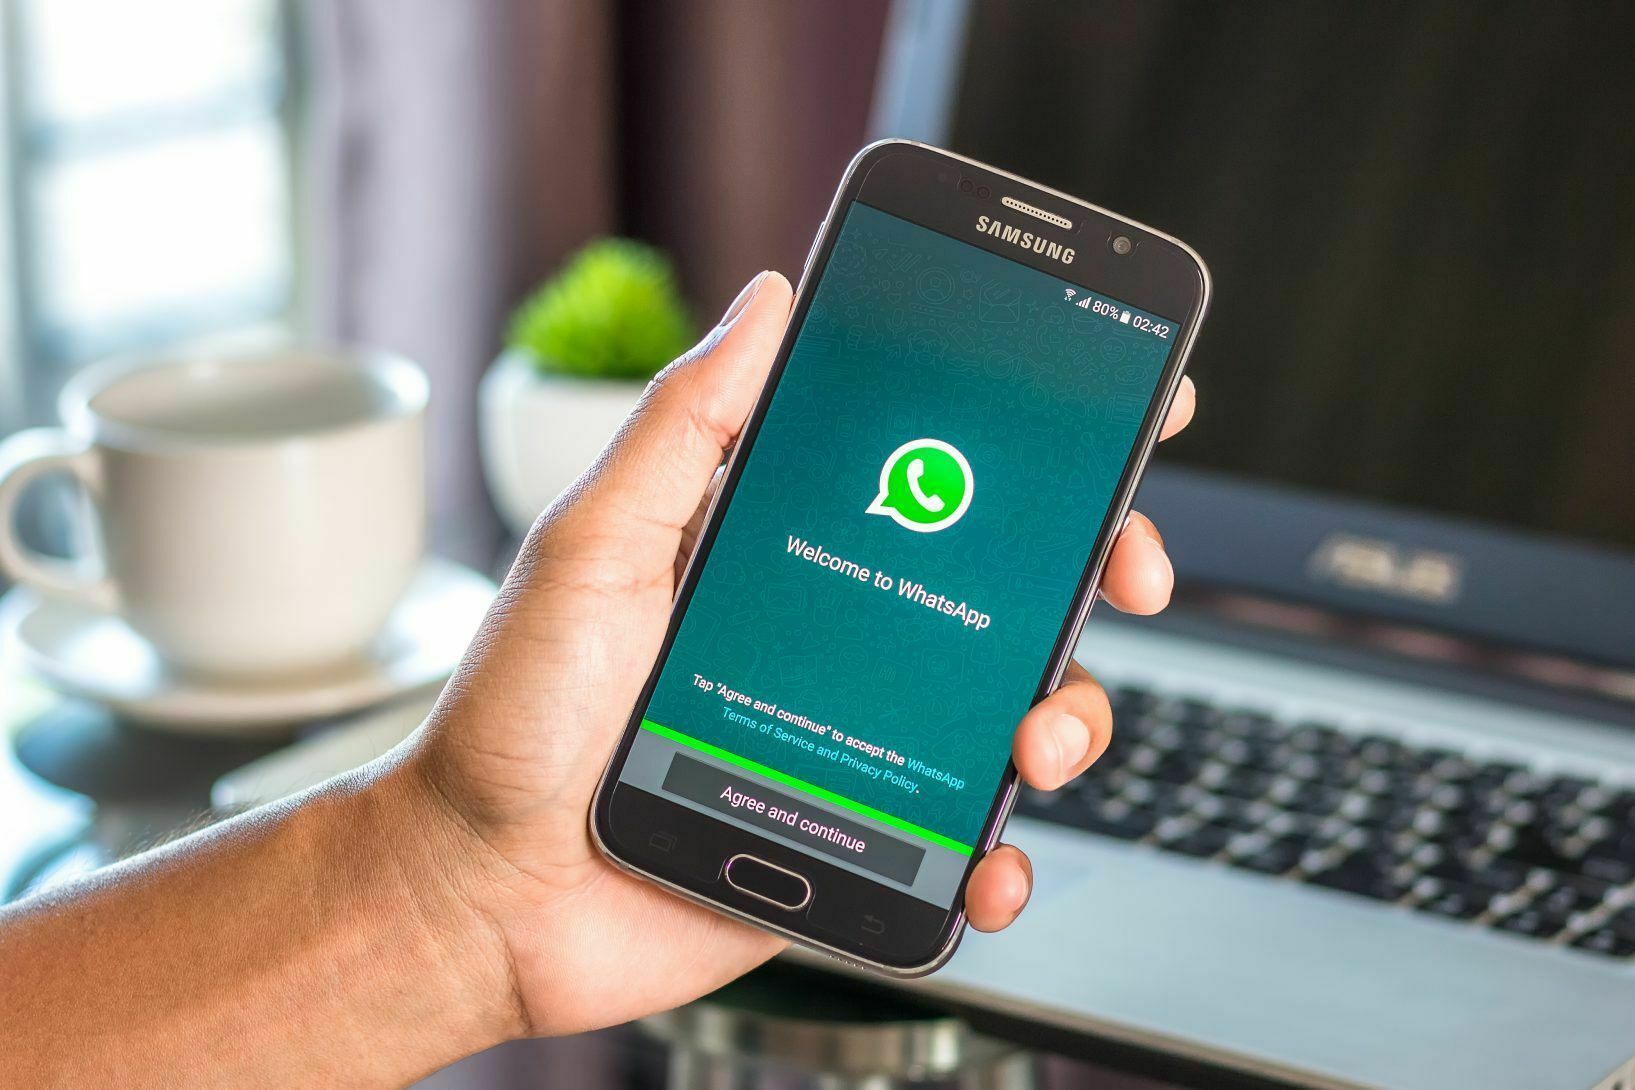 Rosakchestvo warns: WhatsApp is as dangerous as it is popular